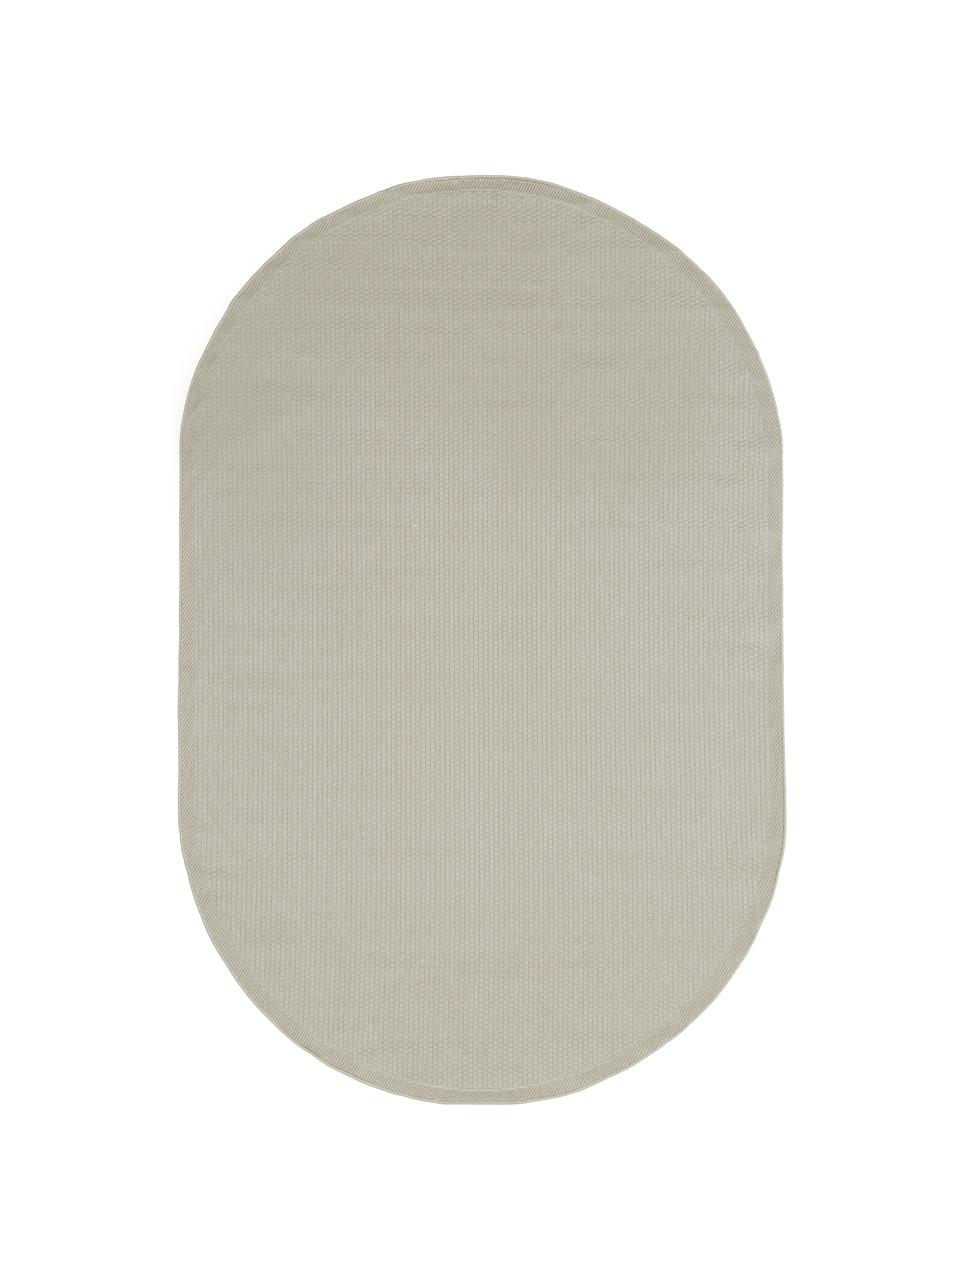 Ovale In- & outdoor vloerkleed Toronto in beige, 100% polypropyleen, Beige, B 200 x L 300 cm (maat L)